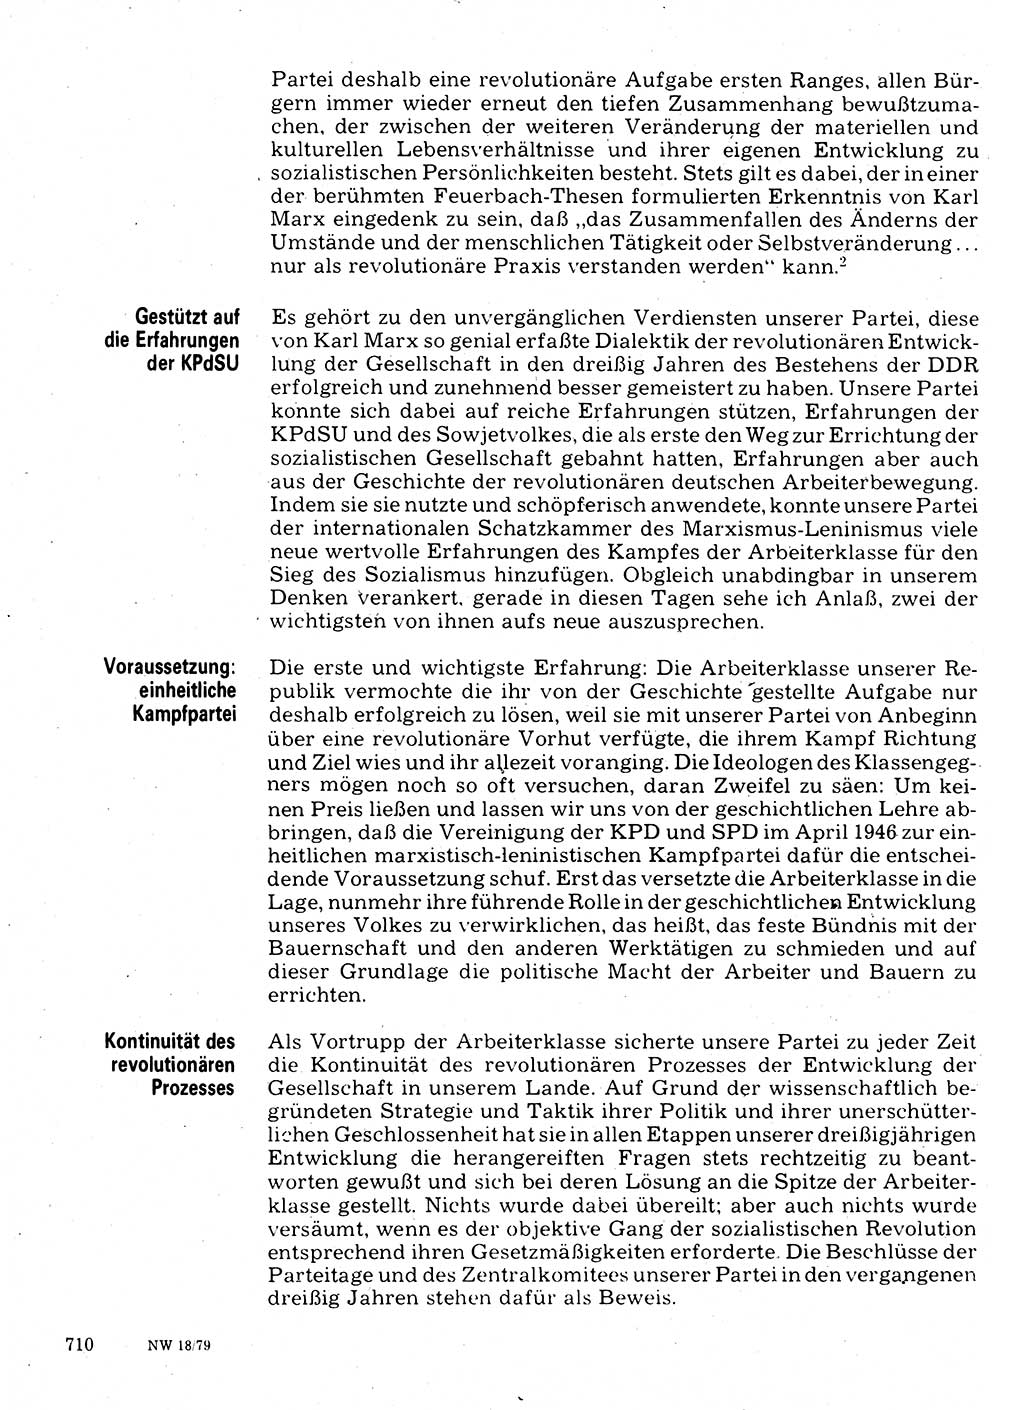 Neuer Weg (NW), Organ des Zentralkomitees (ZK) der SED (Sozialistische Einheitspartei Deutschlands) für Fragen des Parteilebens, 34. Jahrgang [Deutsche Demokratische Republik (DDR)] 1979, Seite 710 (NW ZK SED DDR 1979, S. 710)